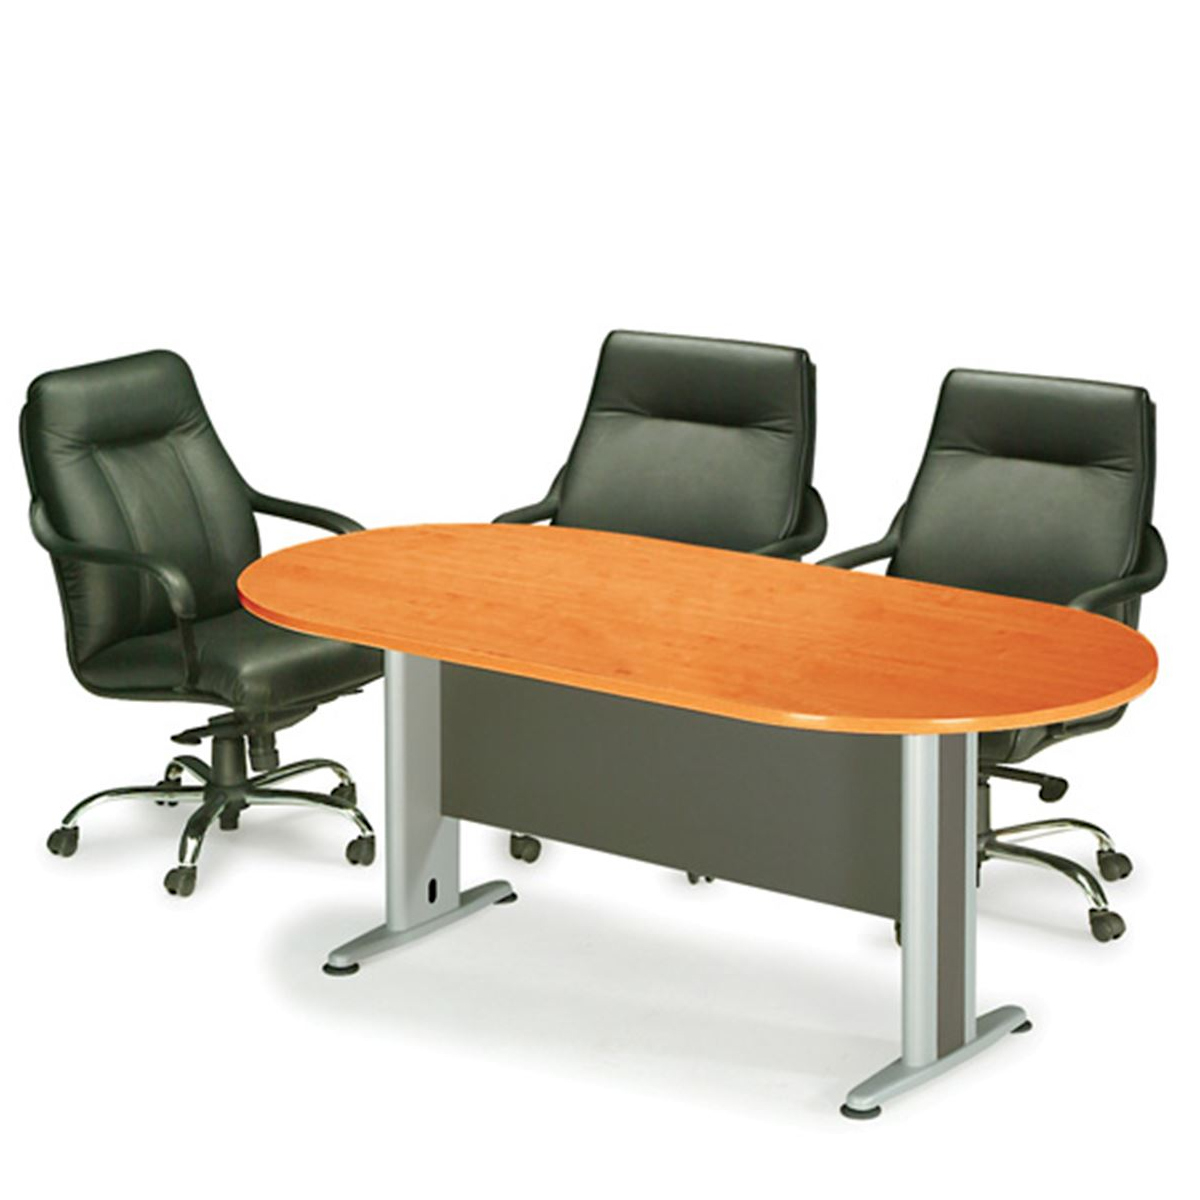 Τραπέζι Συνεδρίου Οβάλ Σκούρο Γκρι/Κερασί Μέταλλο/Μελαμίνη 180x90x75cm